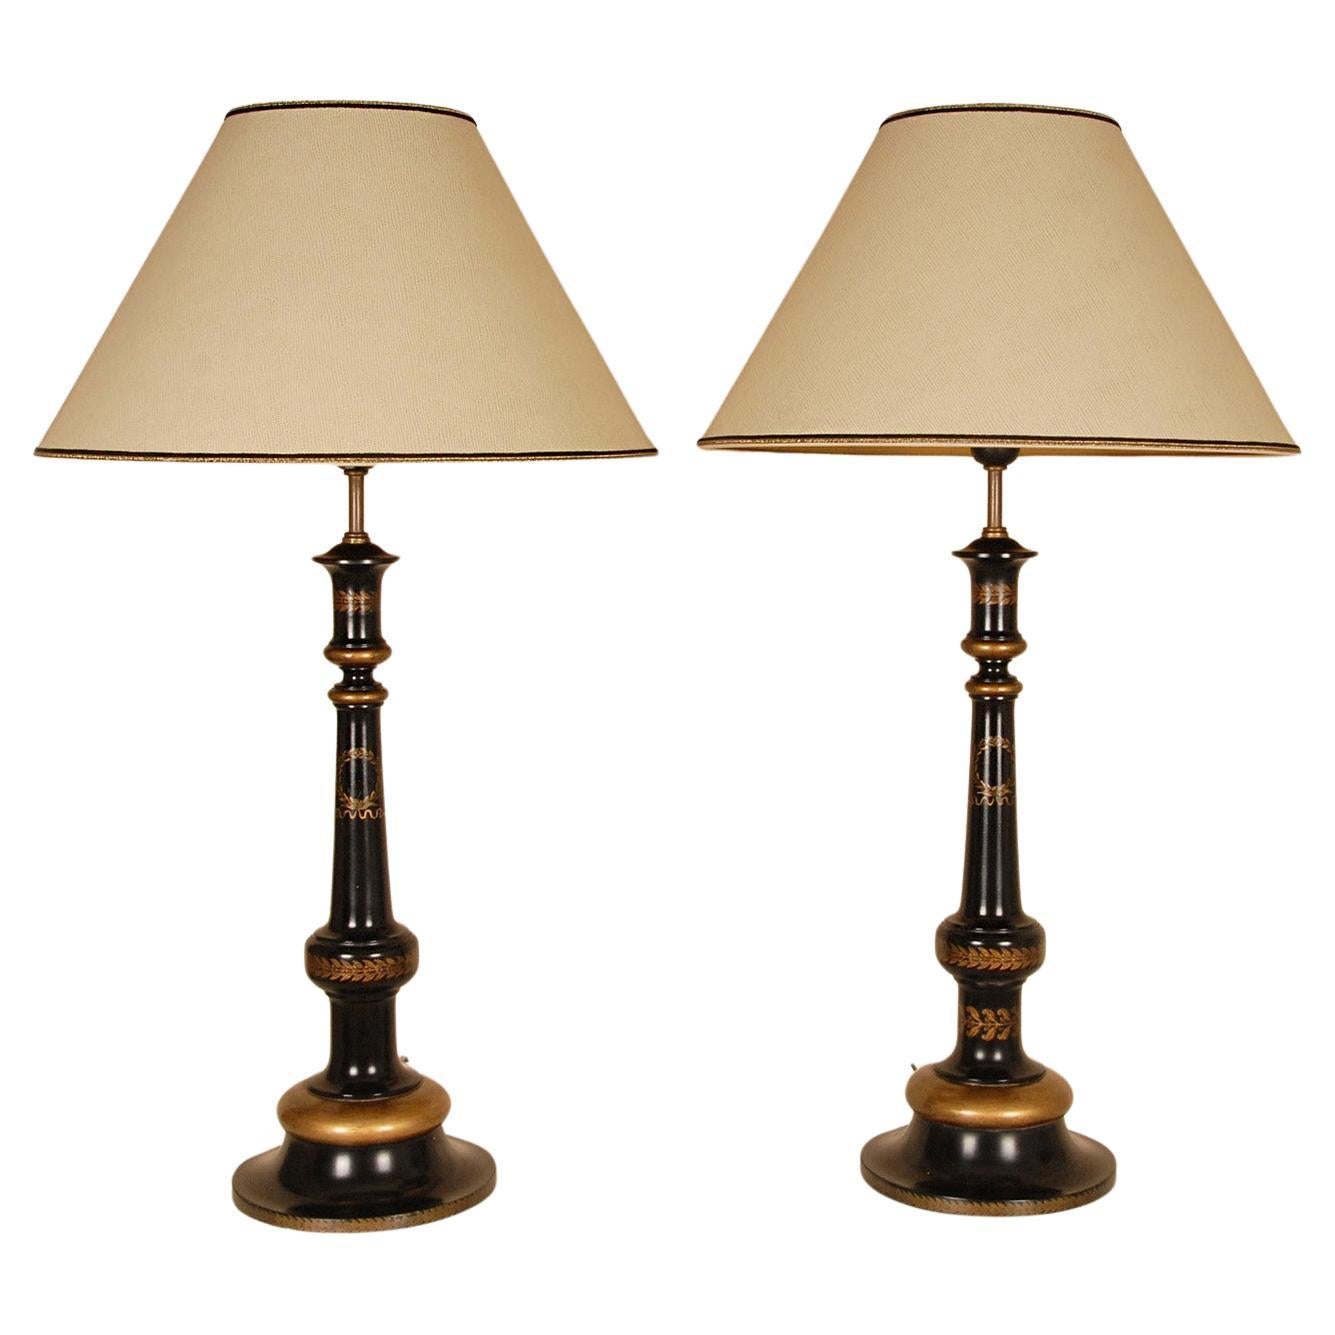 Englische traditionelle Lampen, Gold, schwarz, ebonisiert, Holz, hohe Tischlampen